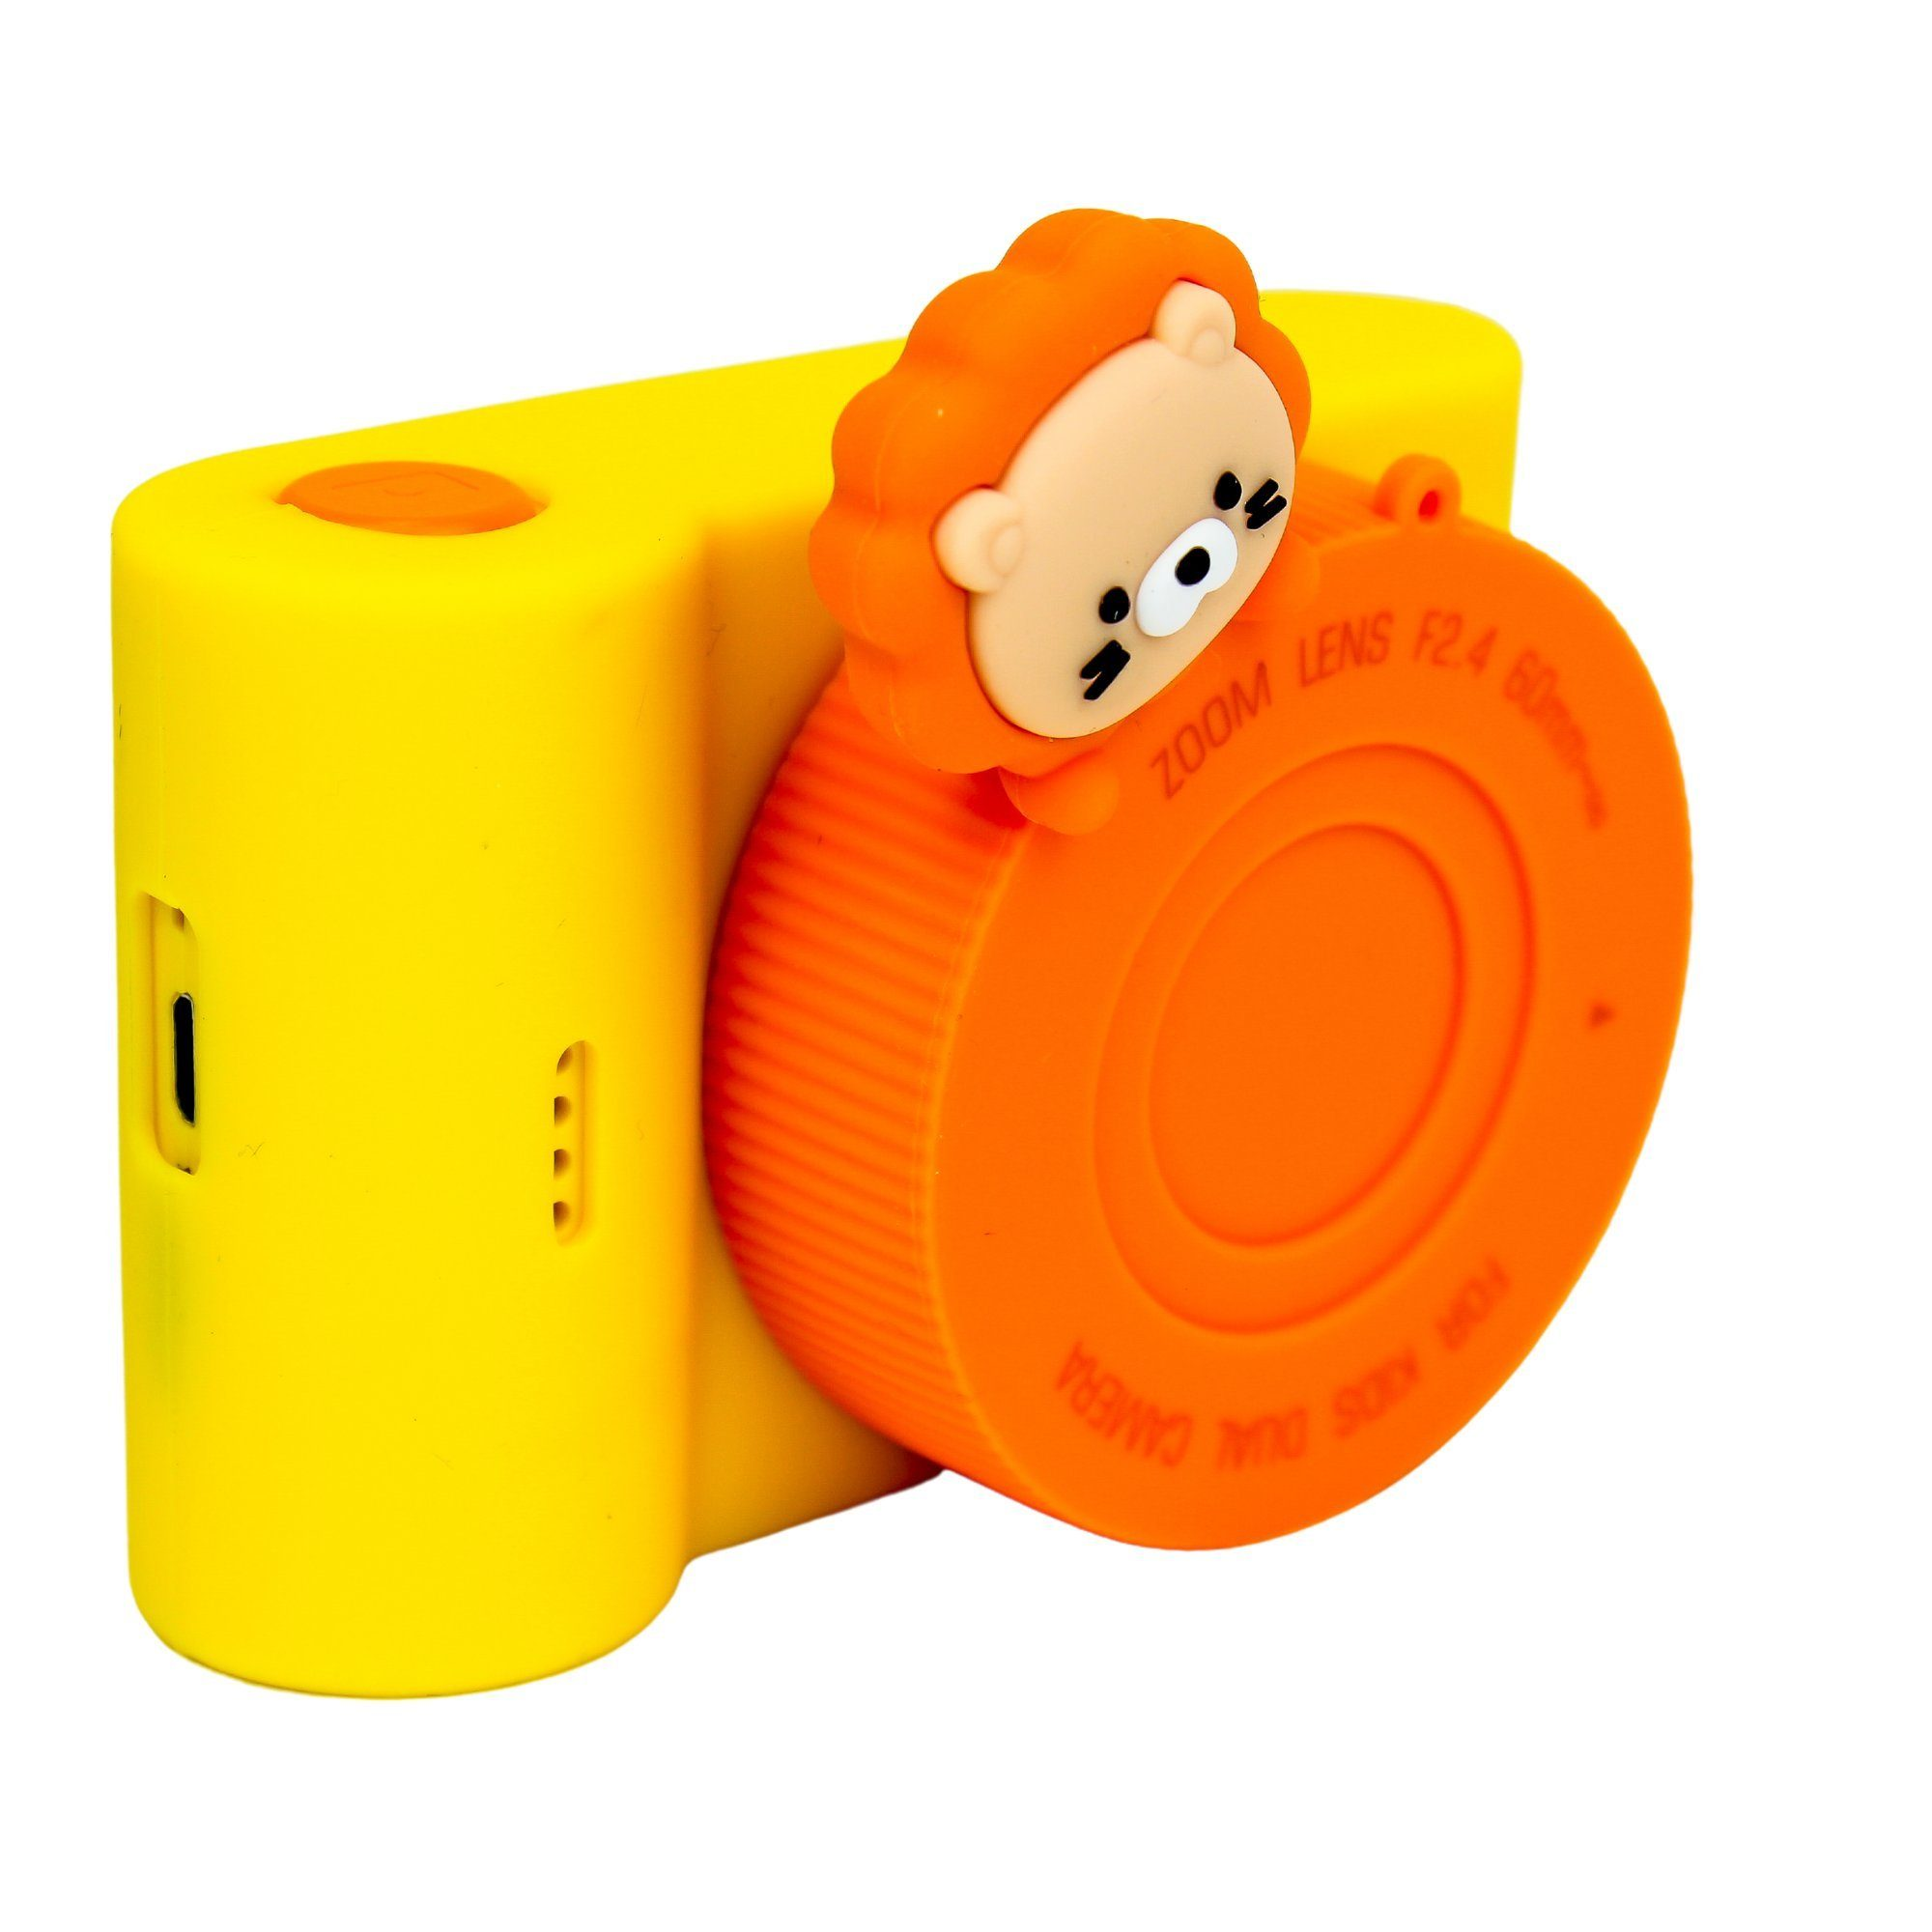 Löwe C5 DOTMALL KK886 Orange- Kinder-Digitalkamera